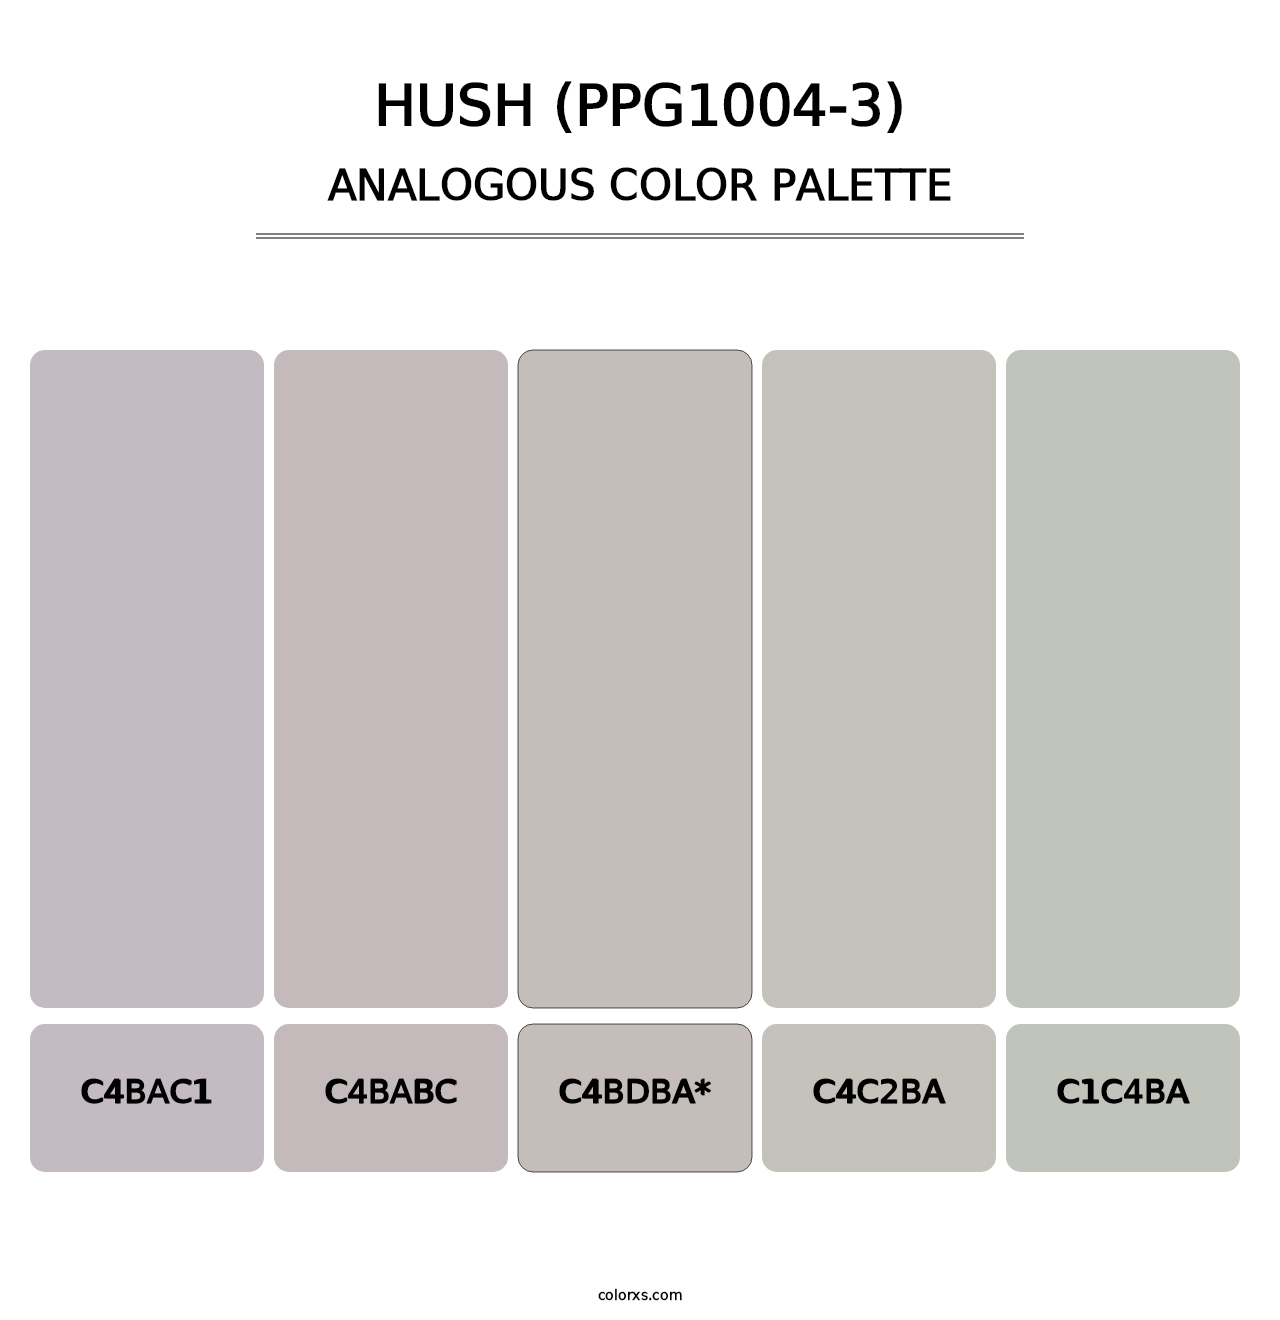 Hush (PPG1004-3) - Analogous Color Palette